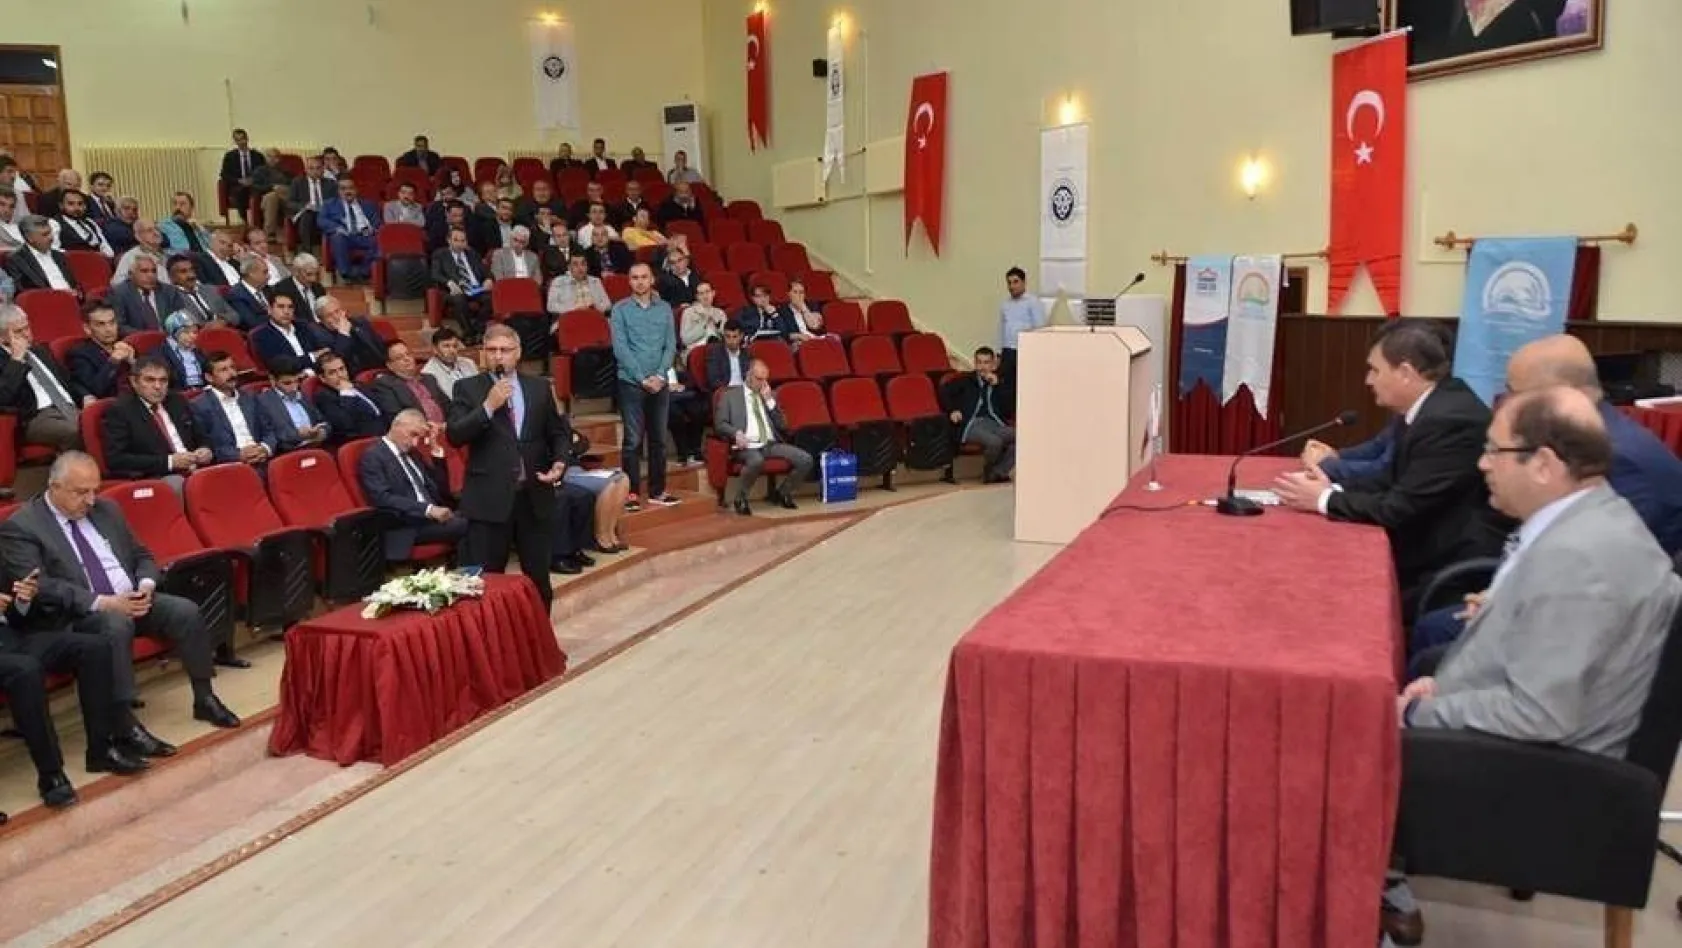 Erzincan'a modern süt işleme tesisi kurulması planlanıyor
